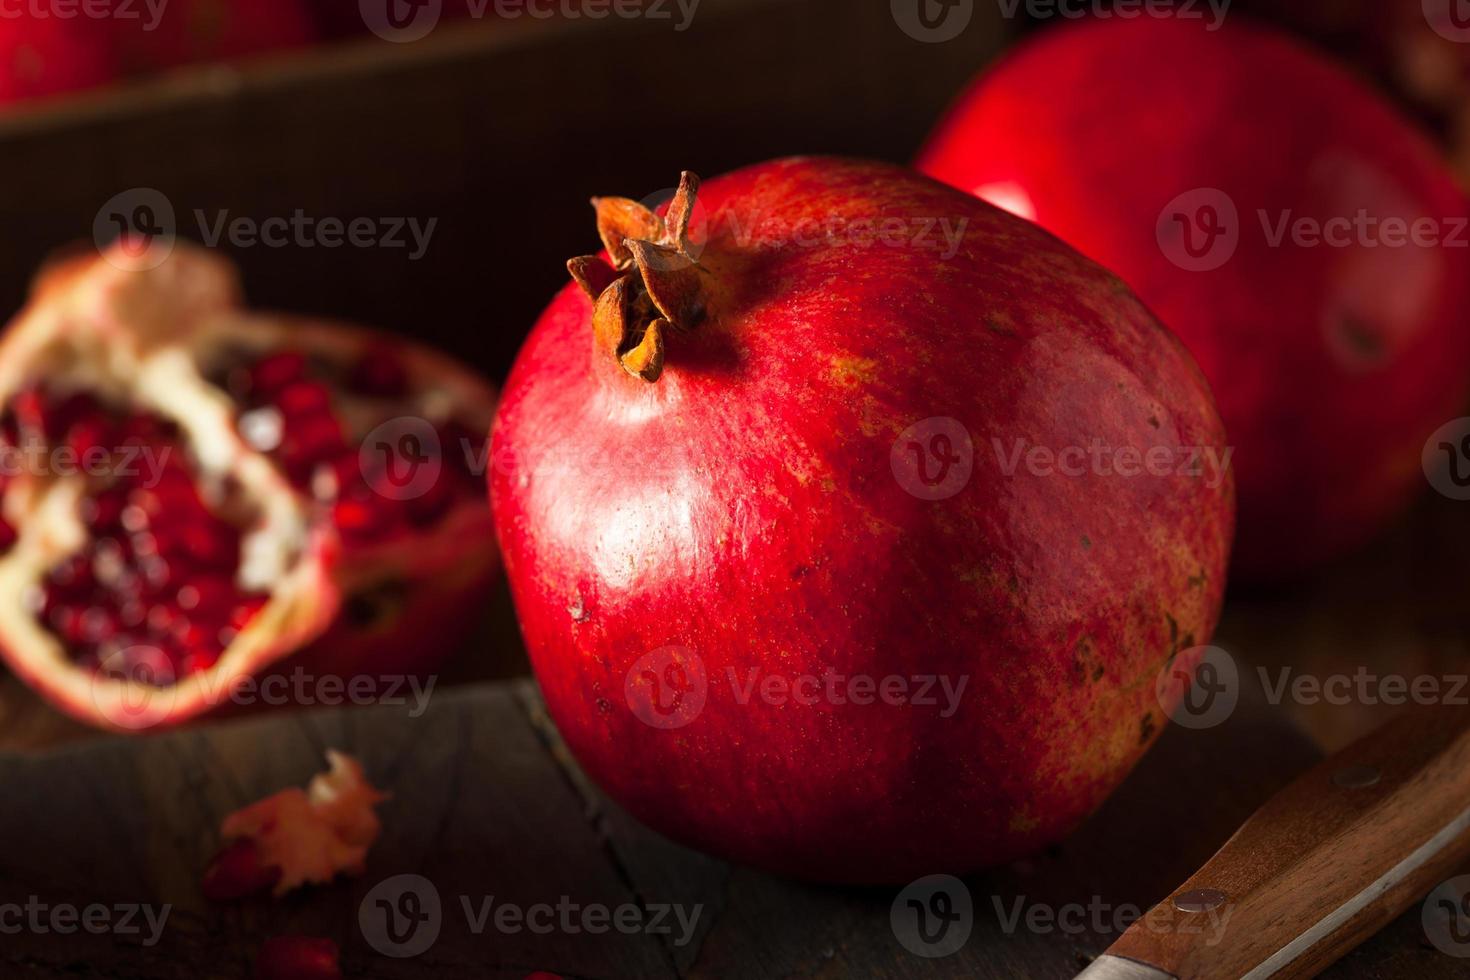 rohe organische rote Granatäpfel foto